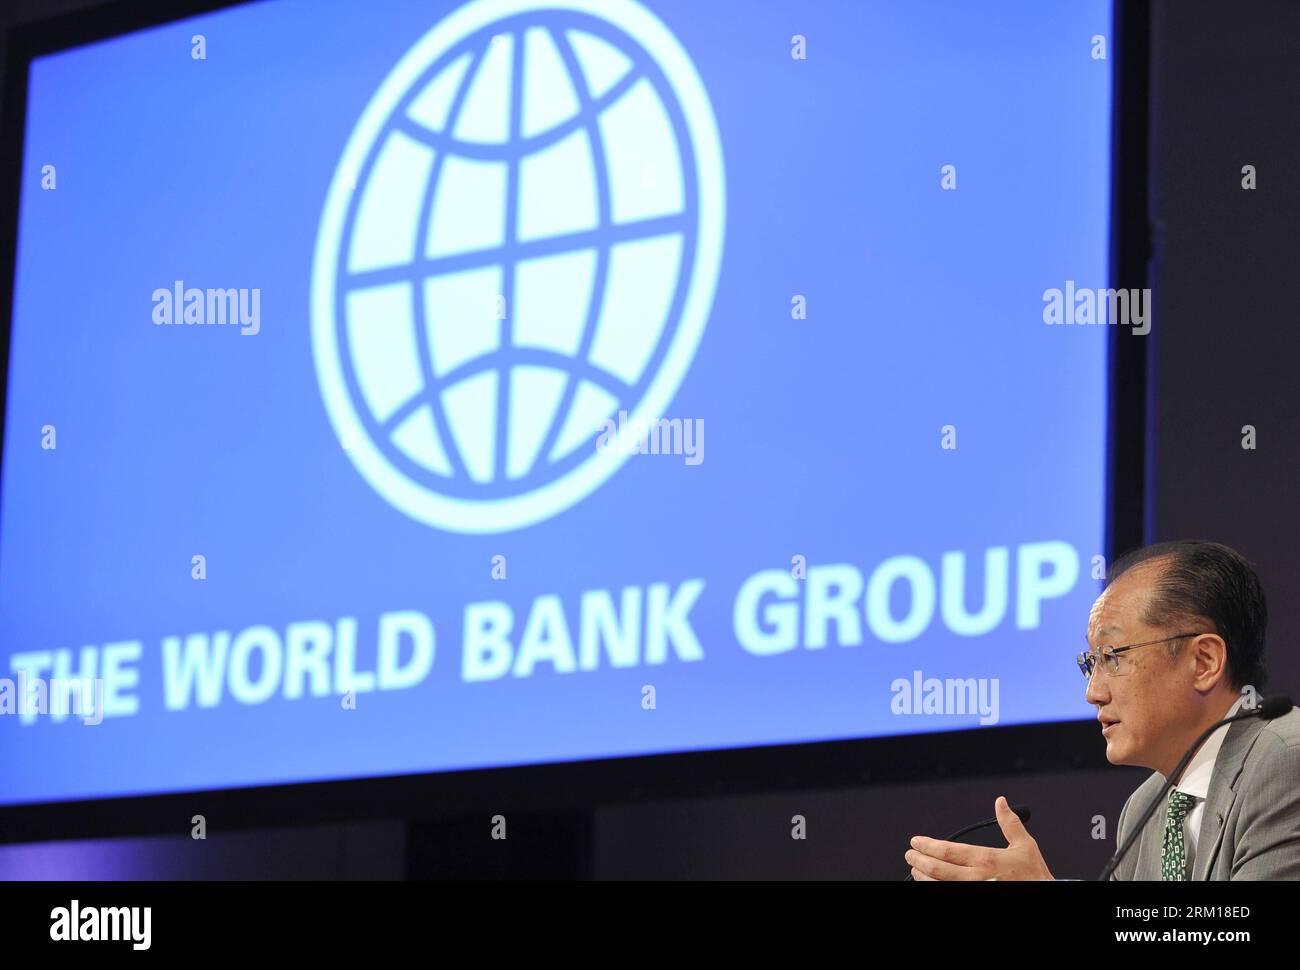 Número de archivo: 59536915 Fecha: 18.04.2013 Copyright: Imago/Xinhua (130418) -- WASHINGTON D.C., 18 de abril de 2013 (Xinhua) -- el presidente del Banco Mundial, Jim Yong Kim, asiste a una conferencia de prensa que conduce a las Reuniones de Primavera del Fondo Monetario Internacional (FMI) y el Banco Mundial, que comenzarán el viernes, en la sede del FMI en Washington D.C., el 18 de abril de 2013. (Xinhua/Wang Yiou) US-WASHINGTON D.C.-BANCO MUNDIAL-JIM YONG KIM PUBLICATIONxNOTxINxCHN Wirtschaft Gente xas 2013 quer Aufmacher premiumd 59536915 Fecha 18 04 2013 Copyright Imago XINHUA Washington D C Abril 18 2013 XINHUA World Ba Foto de stock